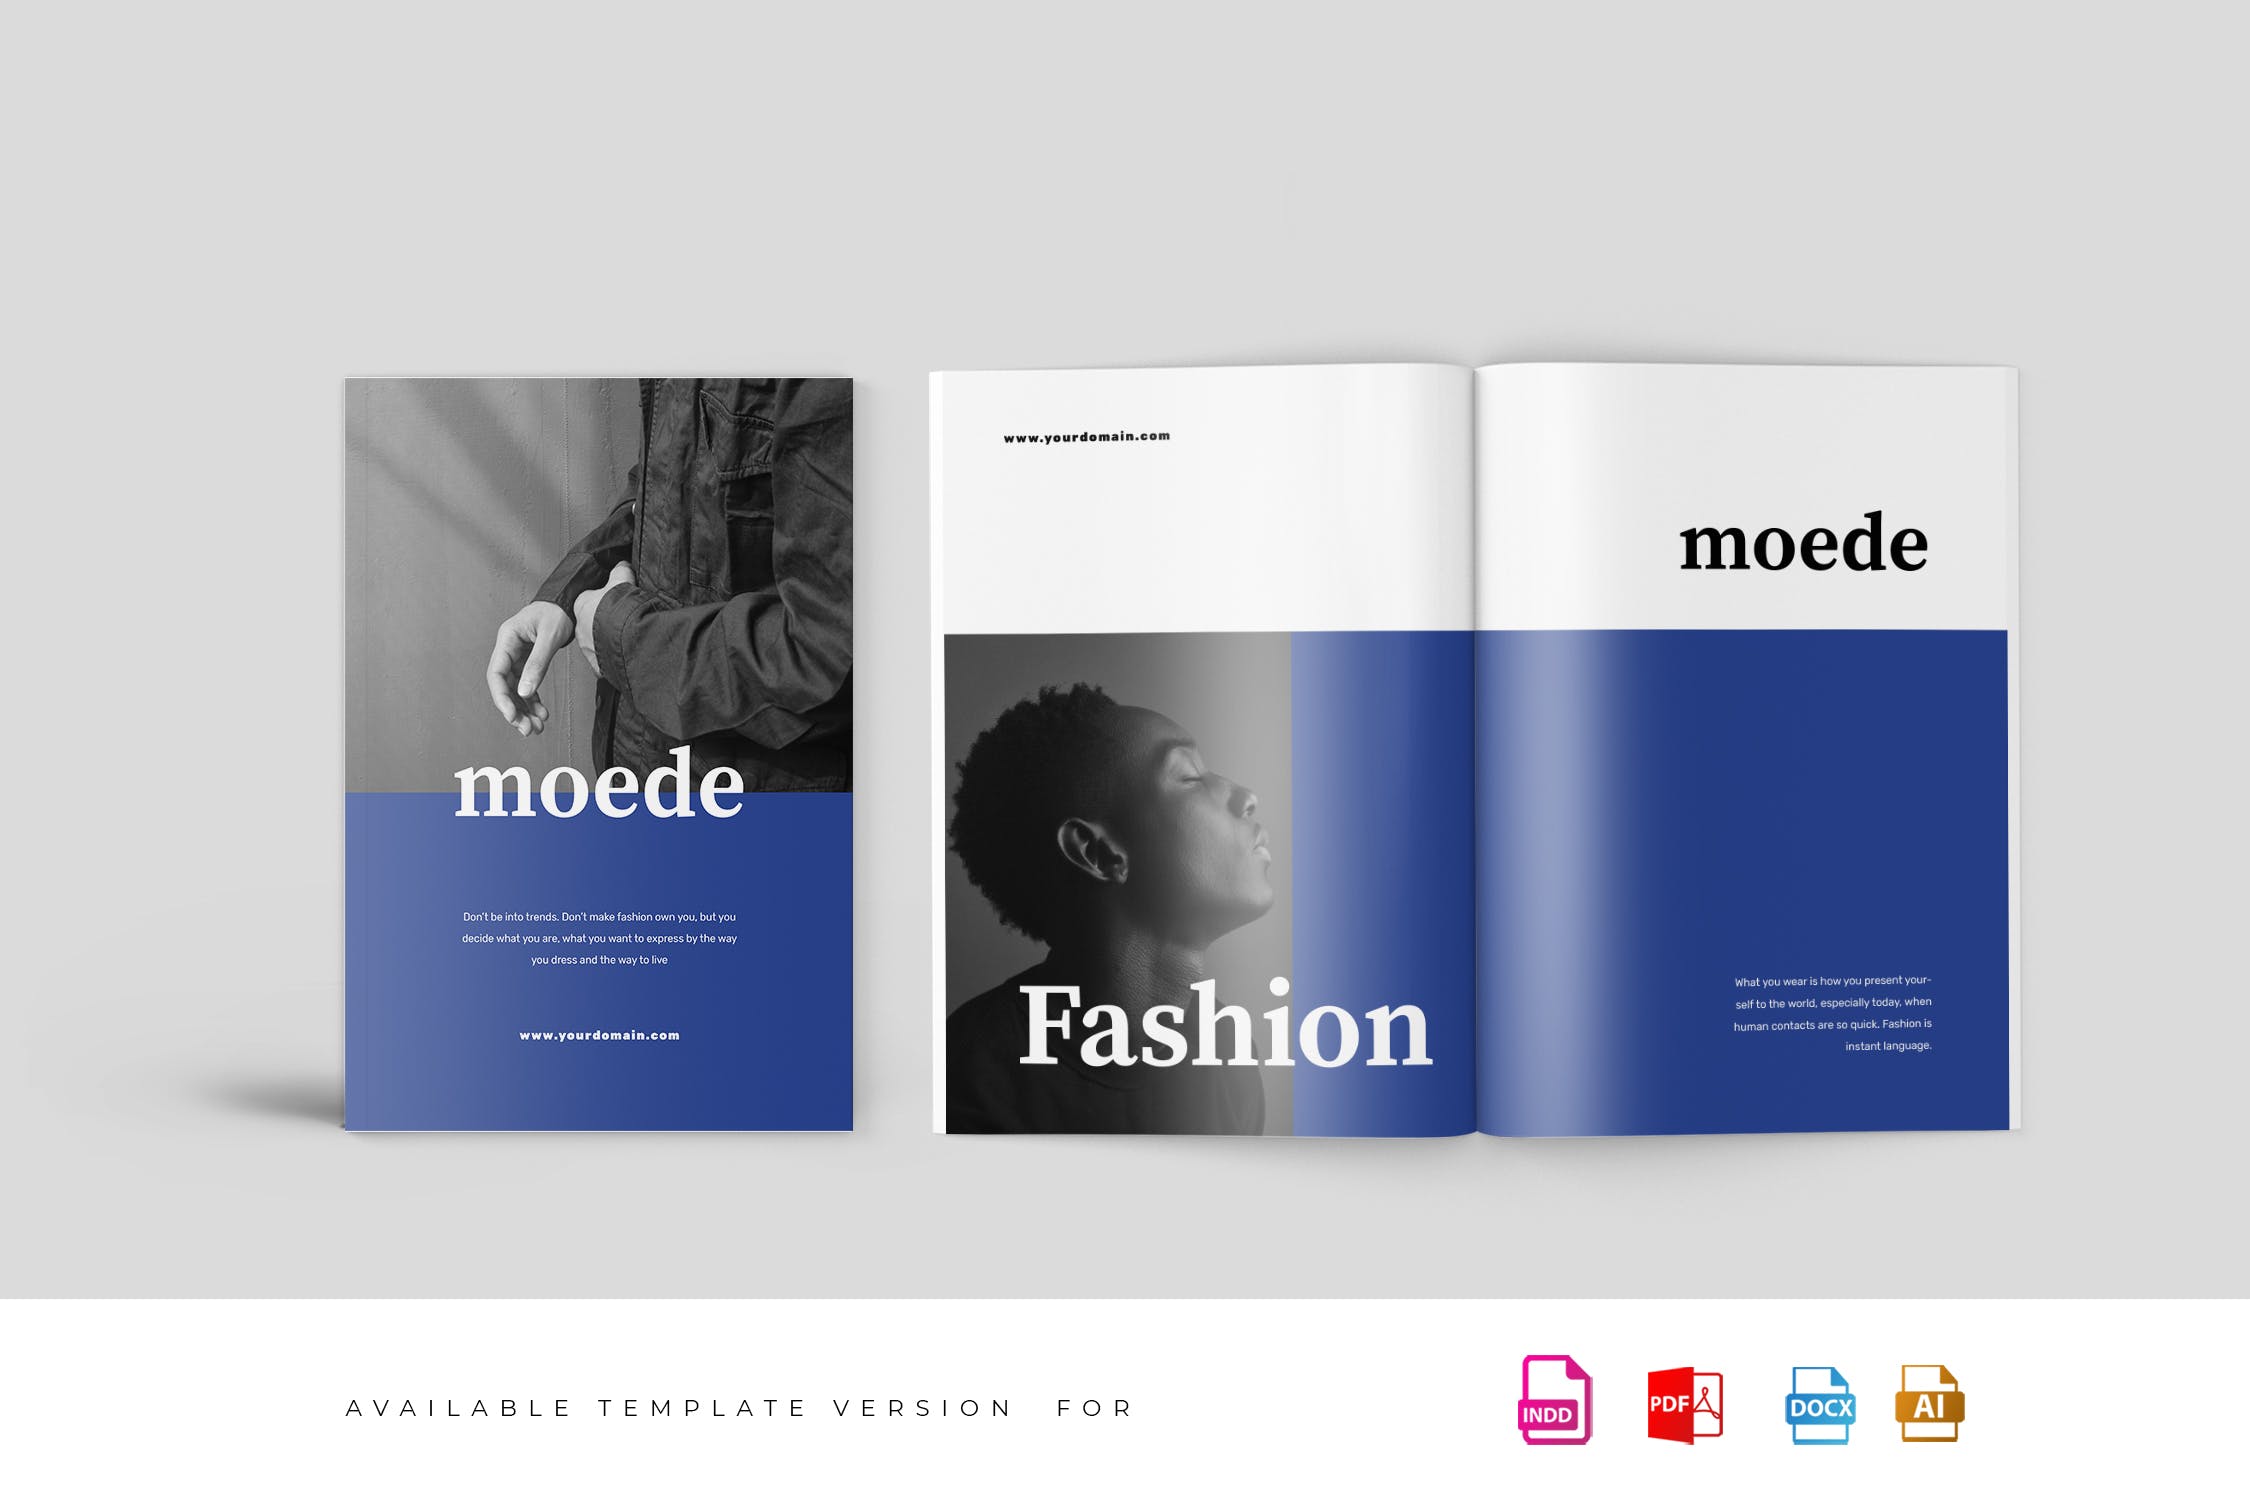 高端时尚服装品牌产品素材库精选目录设计模板 Moede Fashion Lookbook Catalogue插图(1)